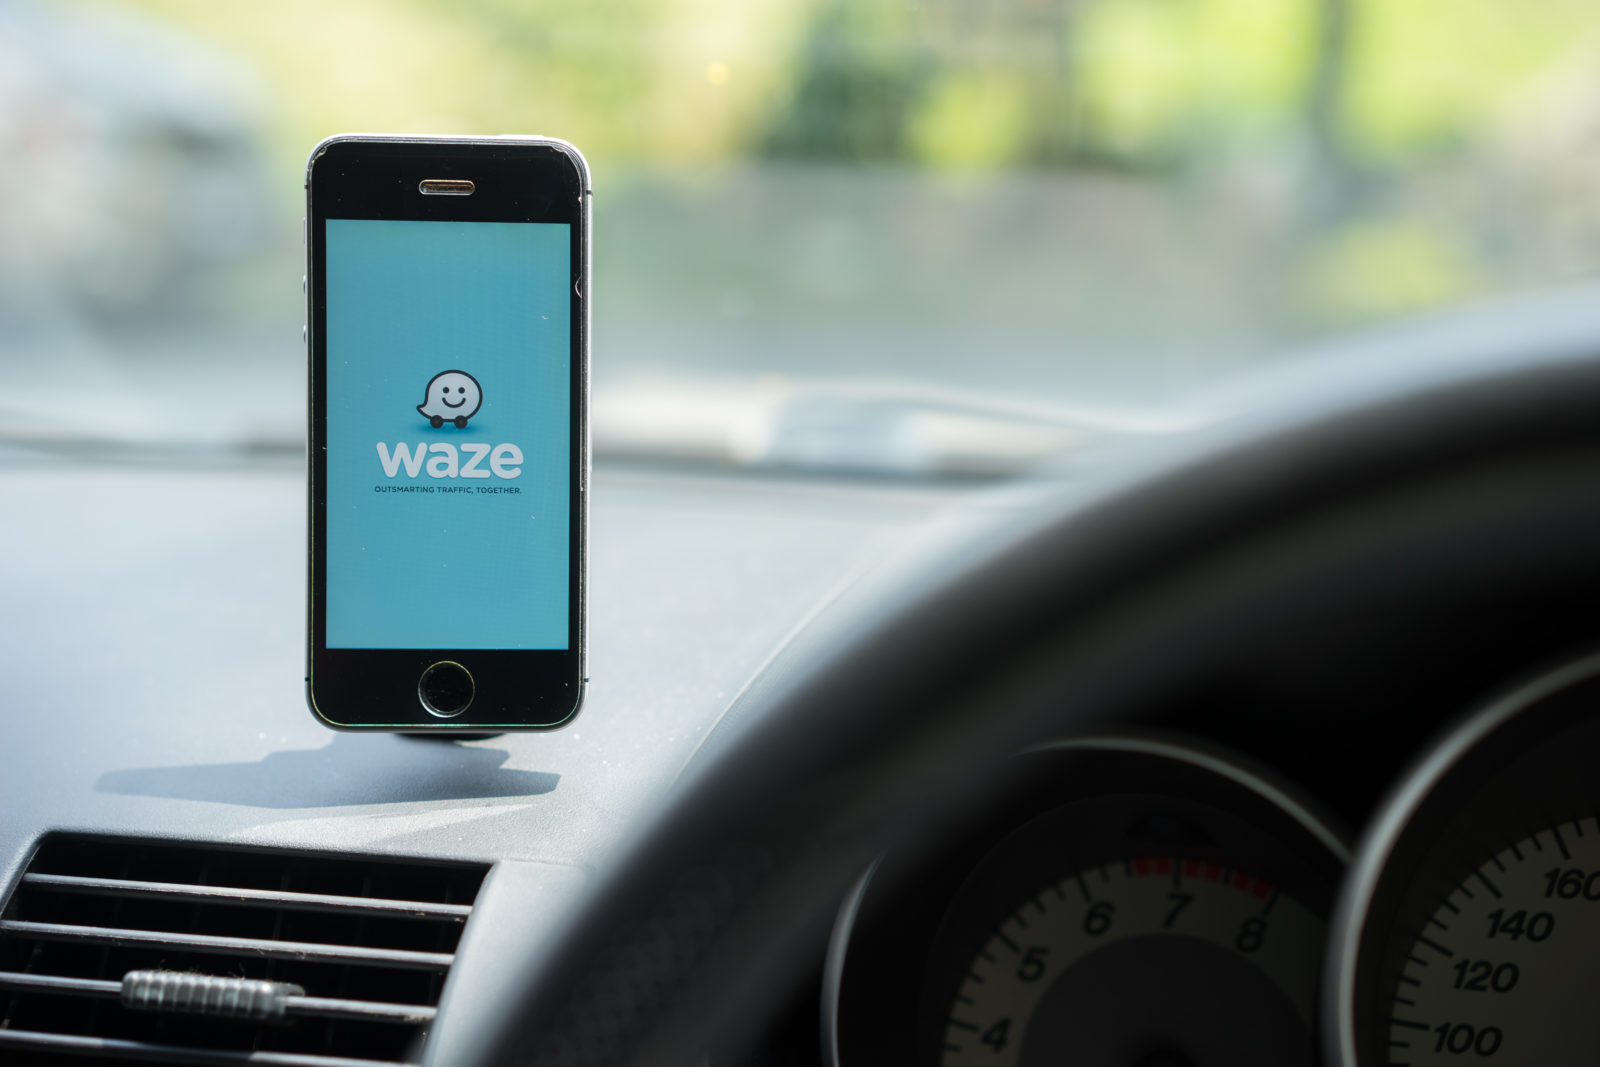 Waze navigation app